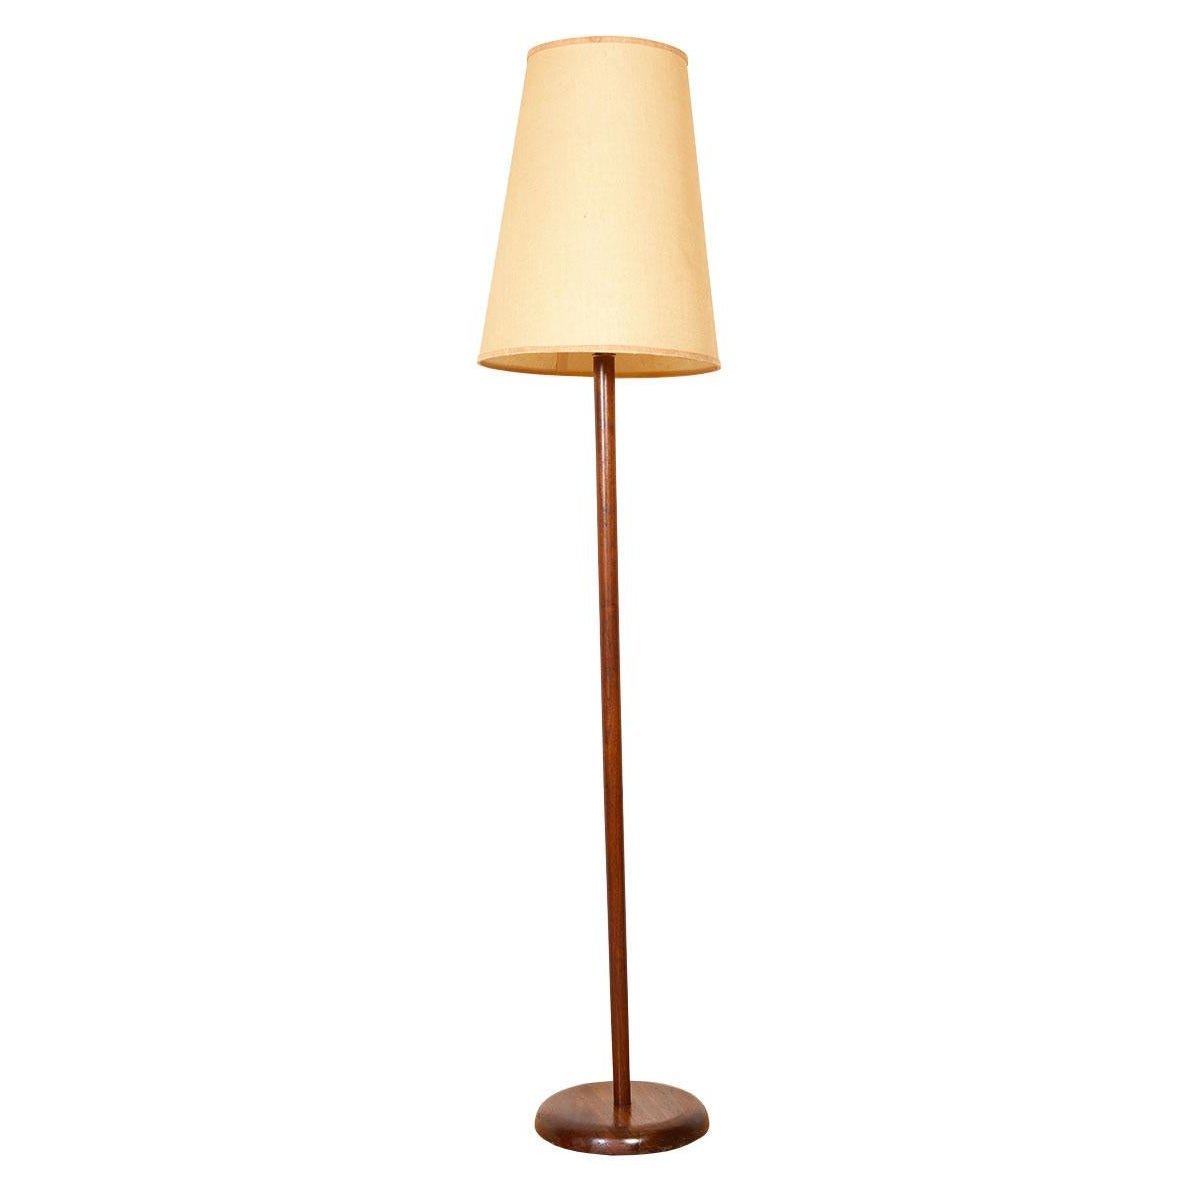 Danish Modern Teak Floor Lamp